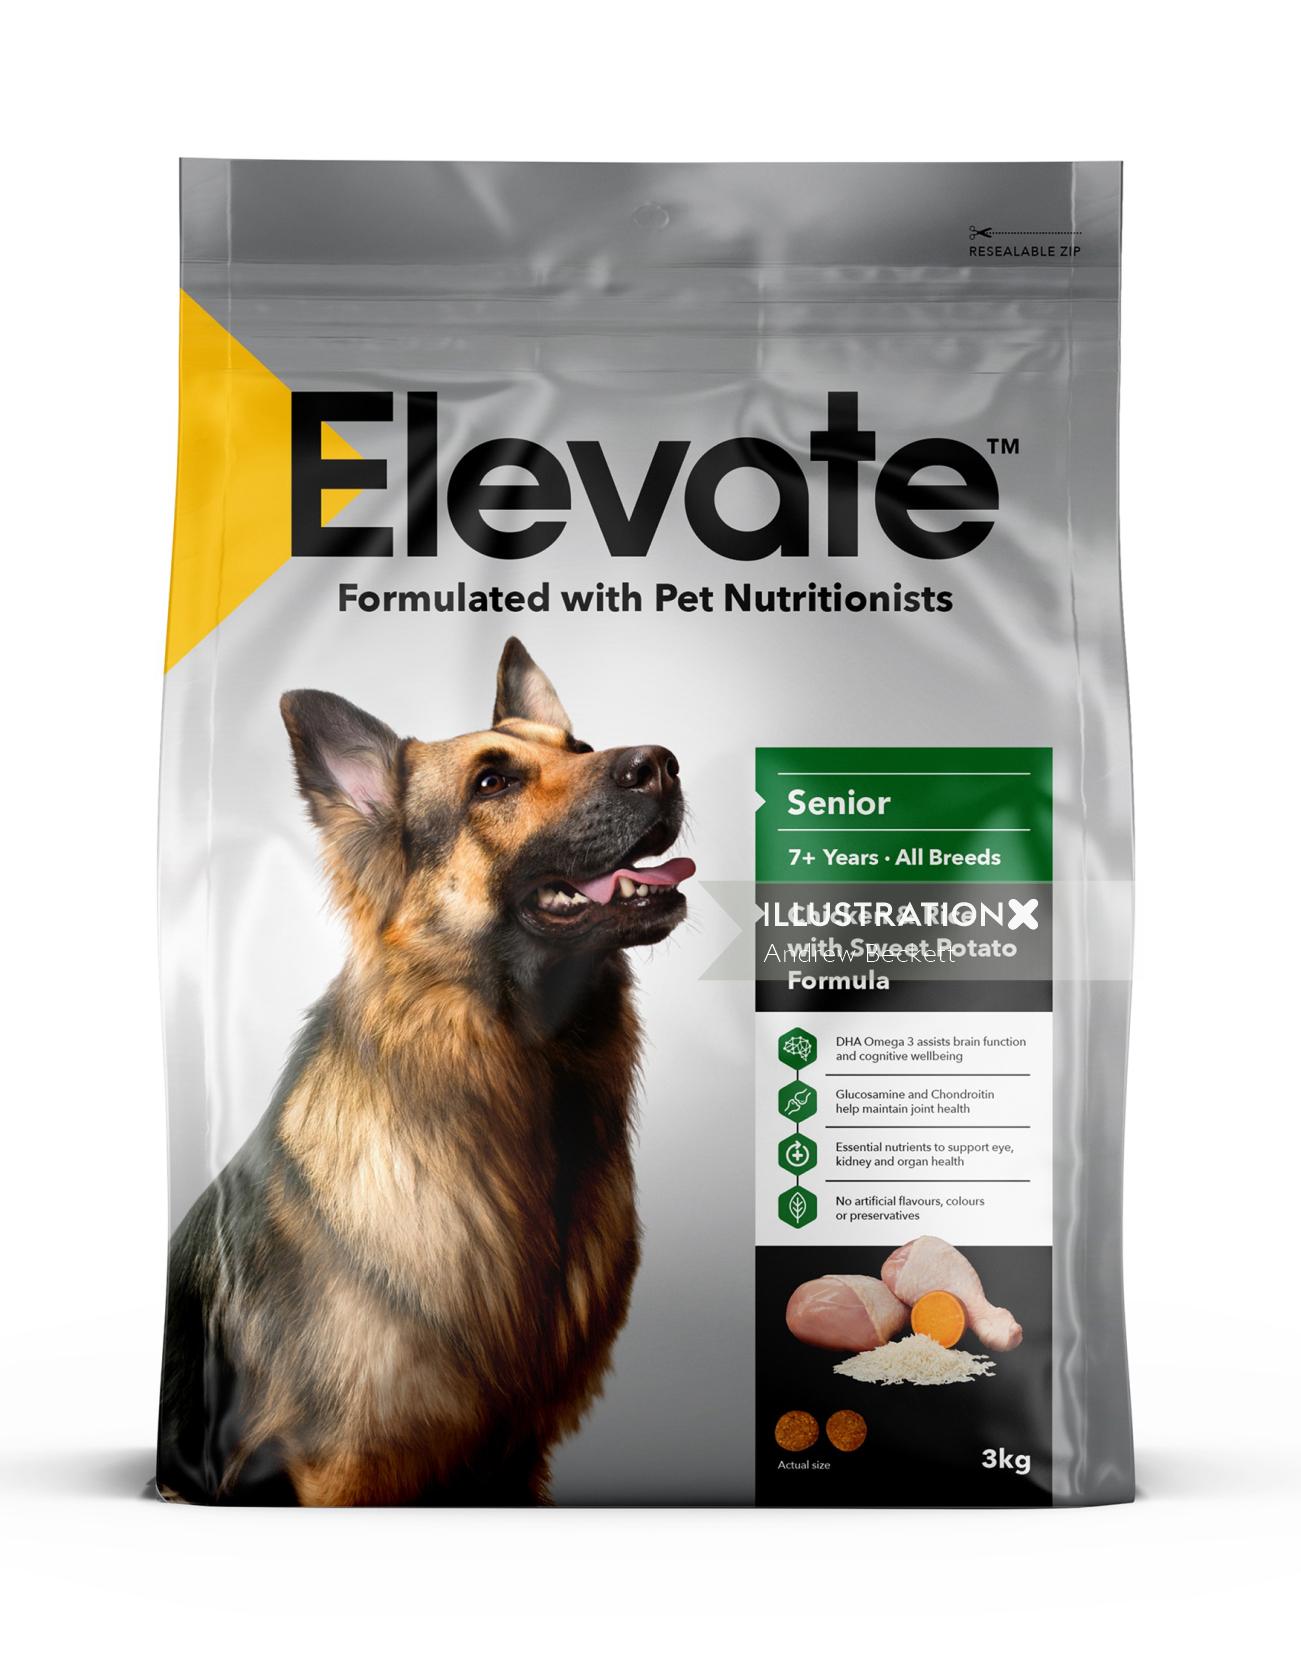 Elevate' Pet food range packaging